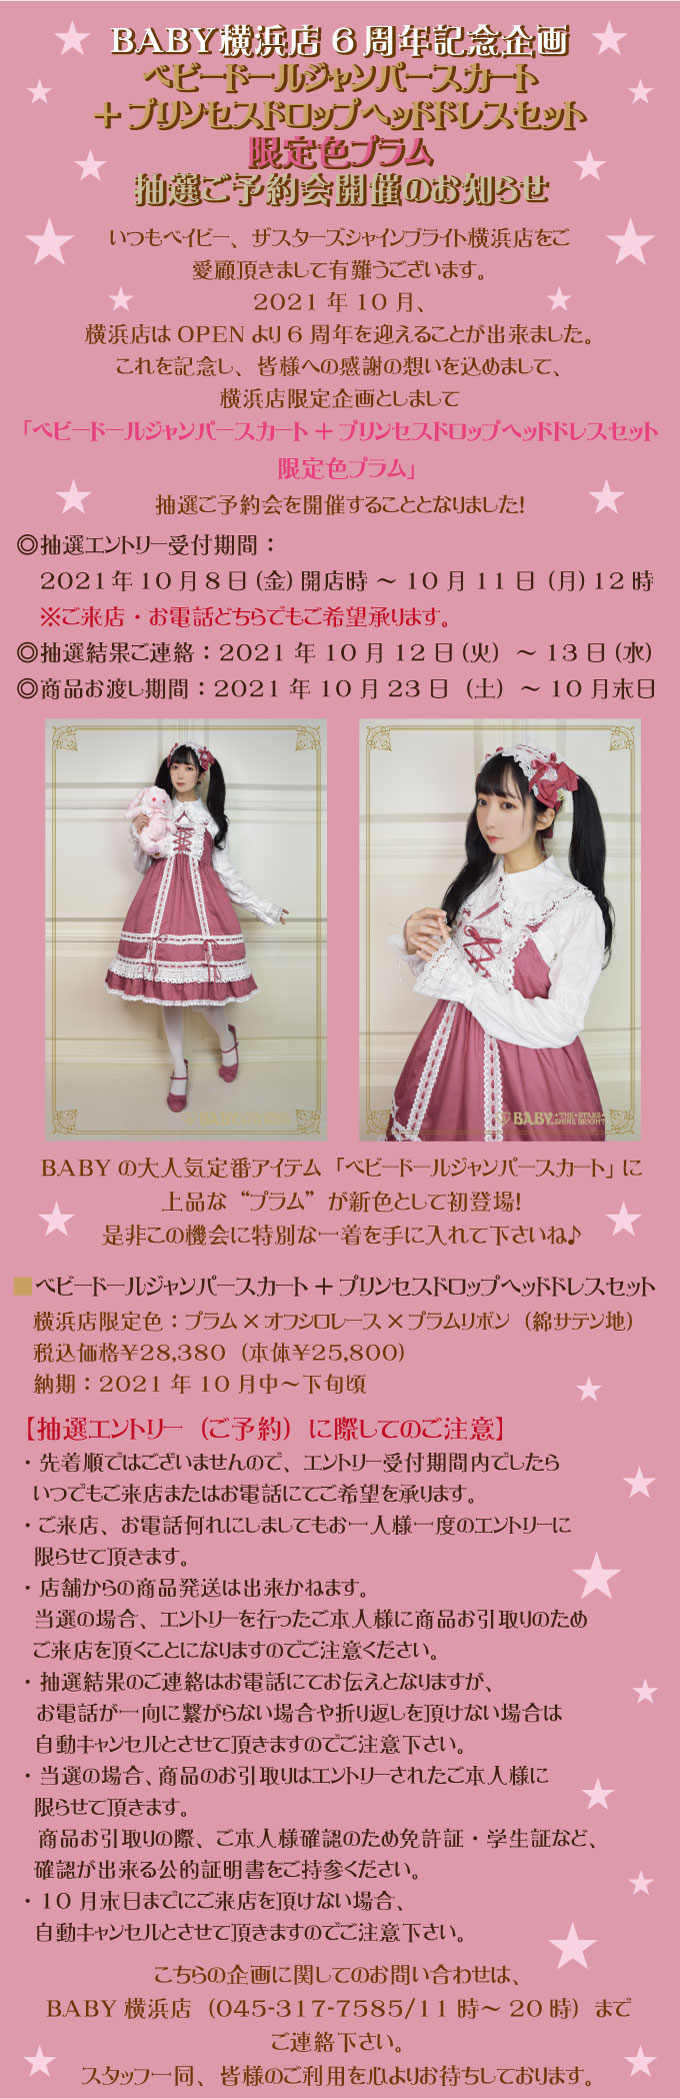 BABY横浜店 6周年記念企画『 ベビードールジャンパースカート+